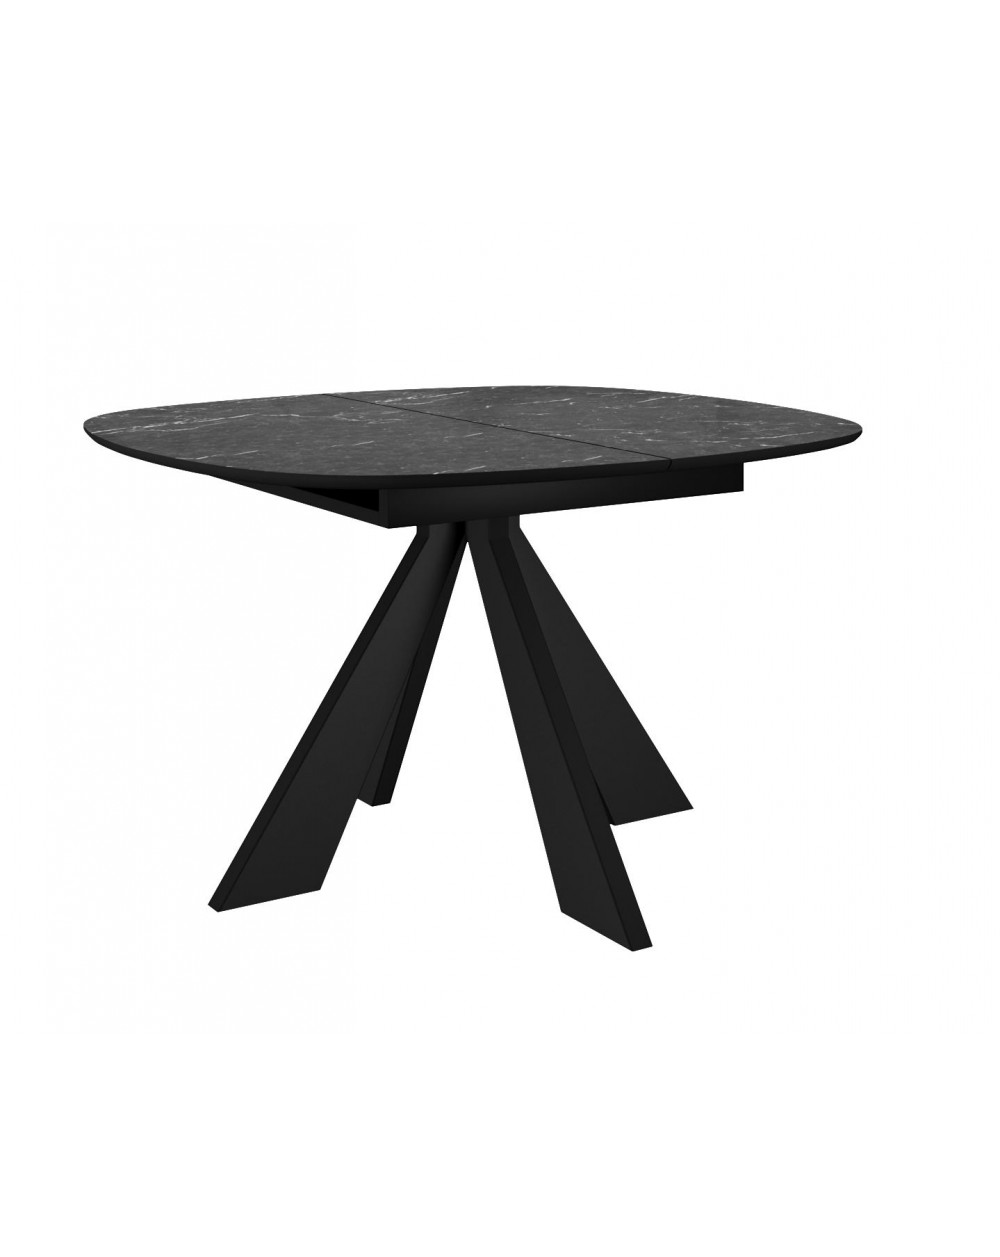 Стол SKK110 Керамика Черный мрамор/подстолье черное/опоры черные (2 уп.) фото Stolmag